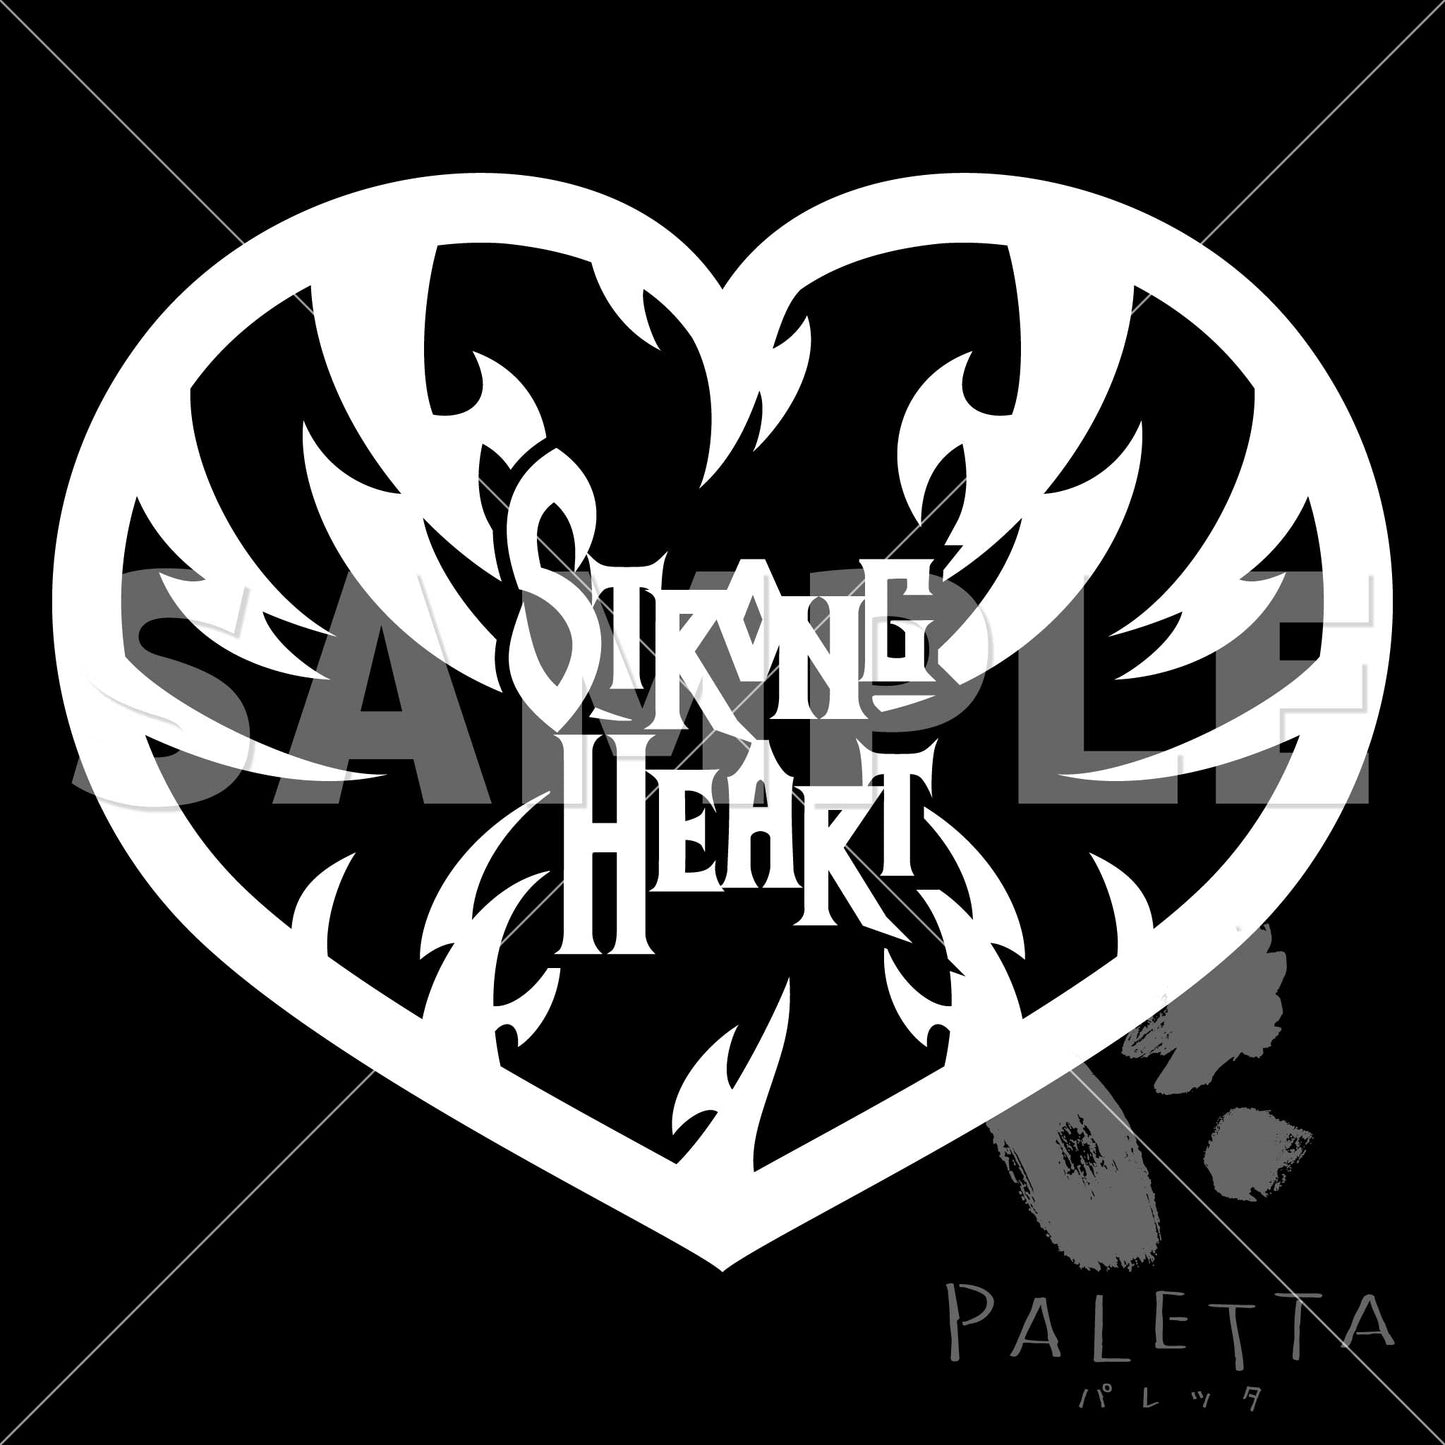 【Paletta】i04-03 strong heart